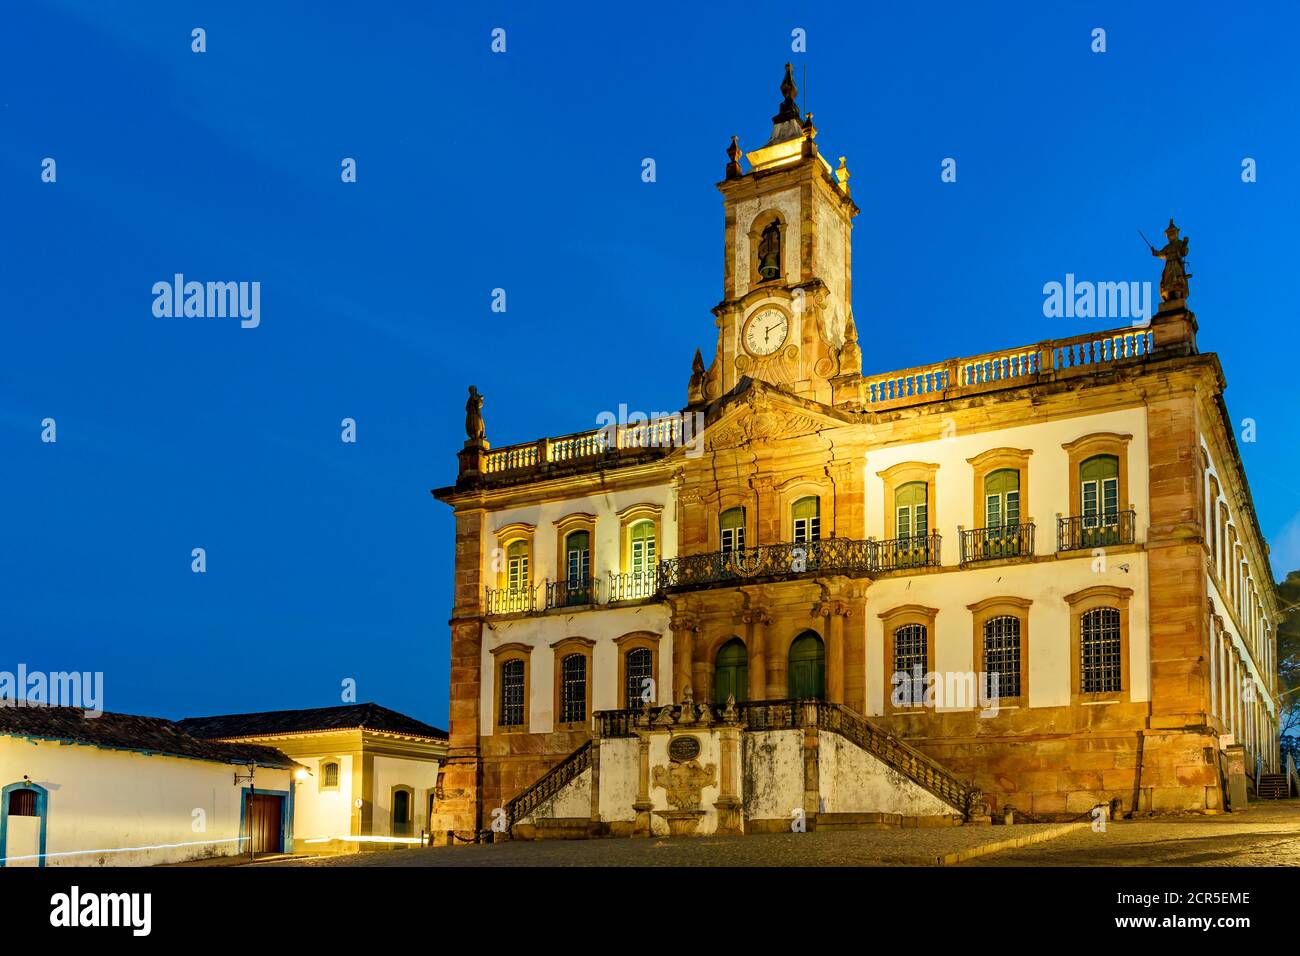 Edificio storico in stile barocco al crepuscolo nella piazza centrale della città di Ouro Preto a Minas Gerais, Brasile Foto Stock